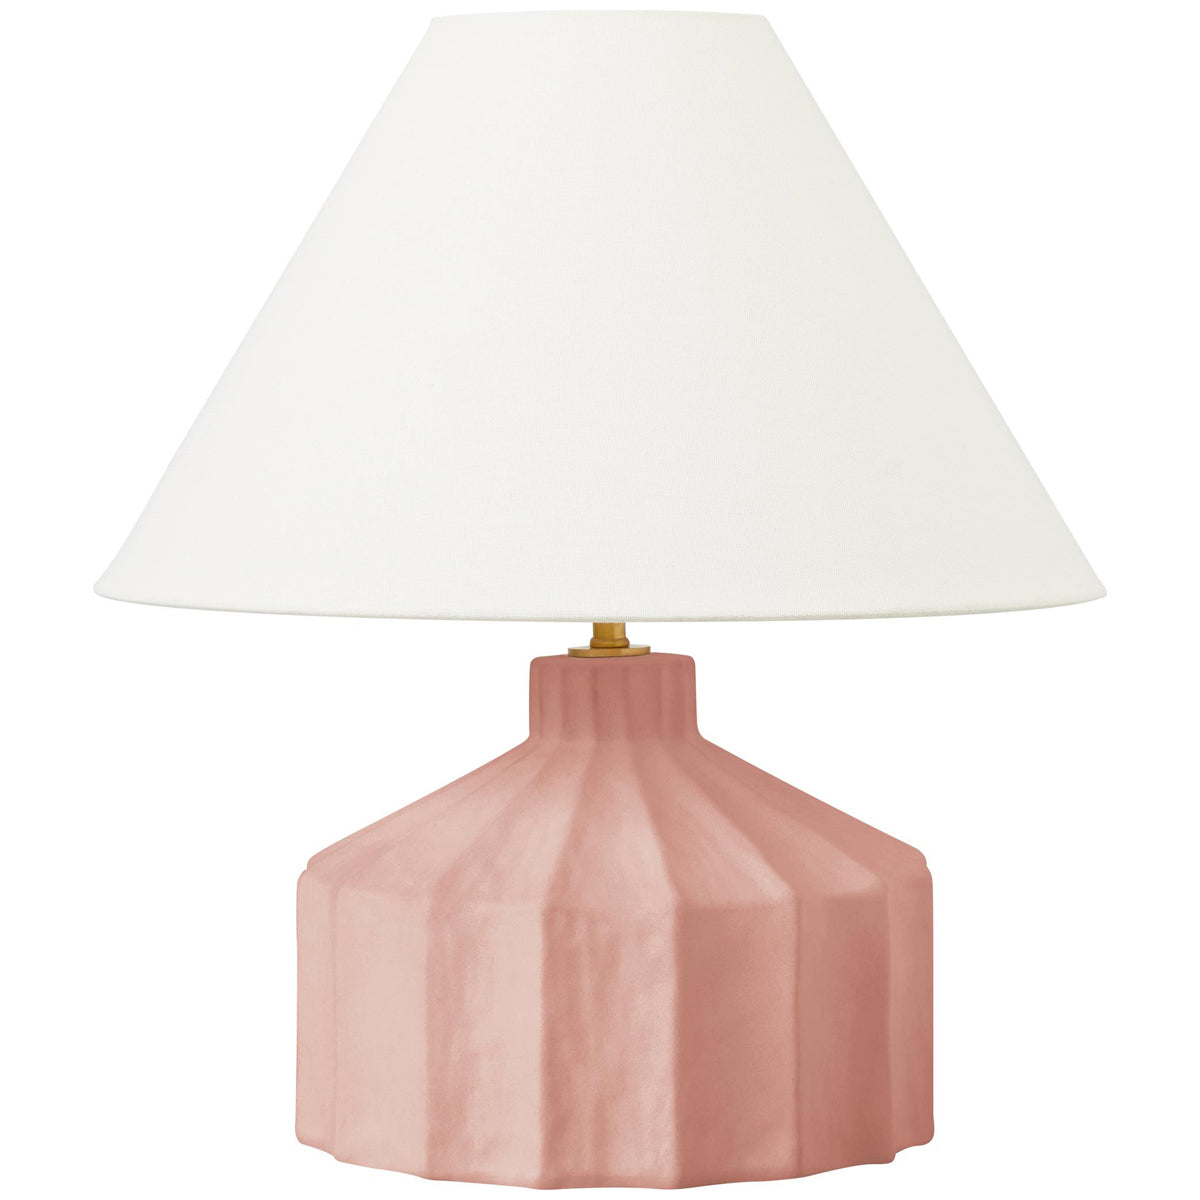 Feiss Kelly Wearstler Veneto Table Lamp